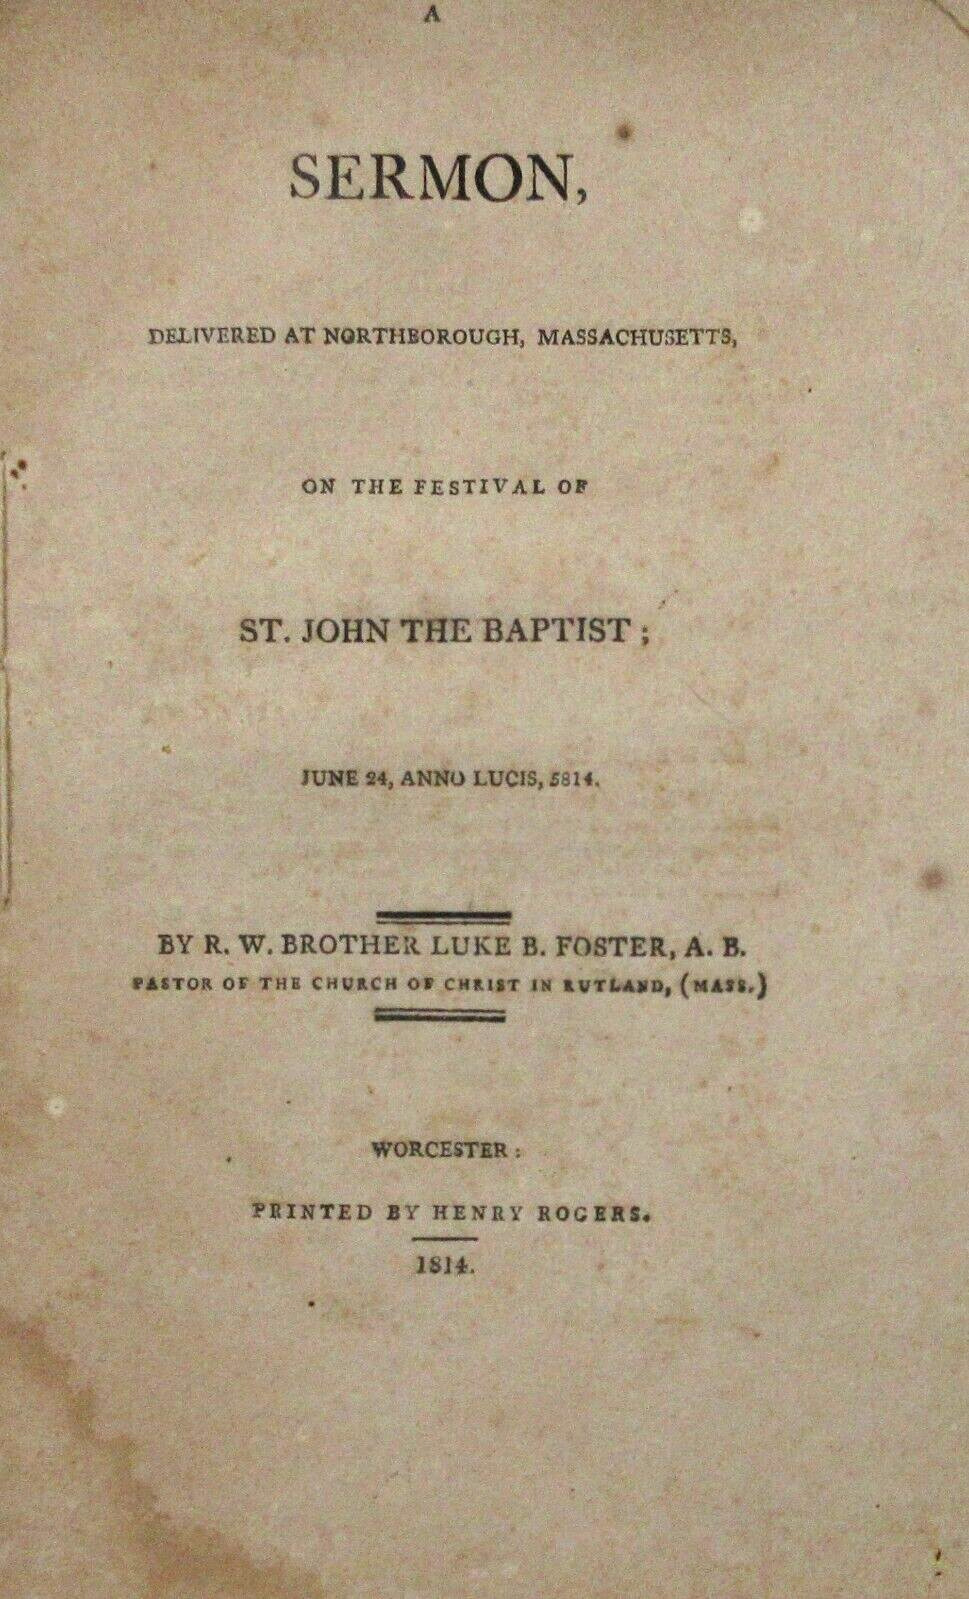 Sermon Northborough Massachusetts Festival of St. John the Baptist Foster 1814